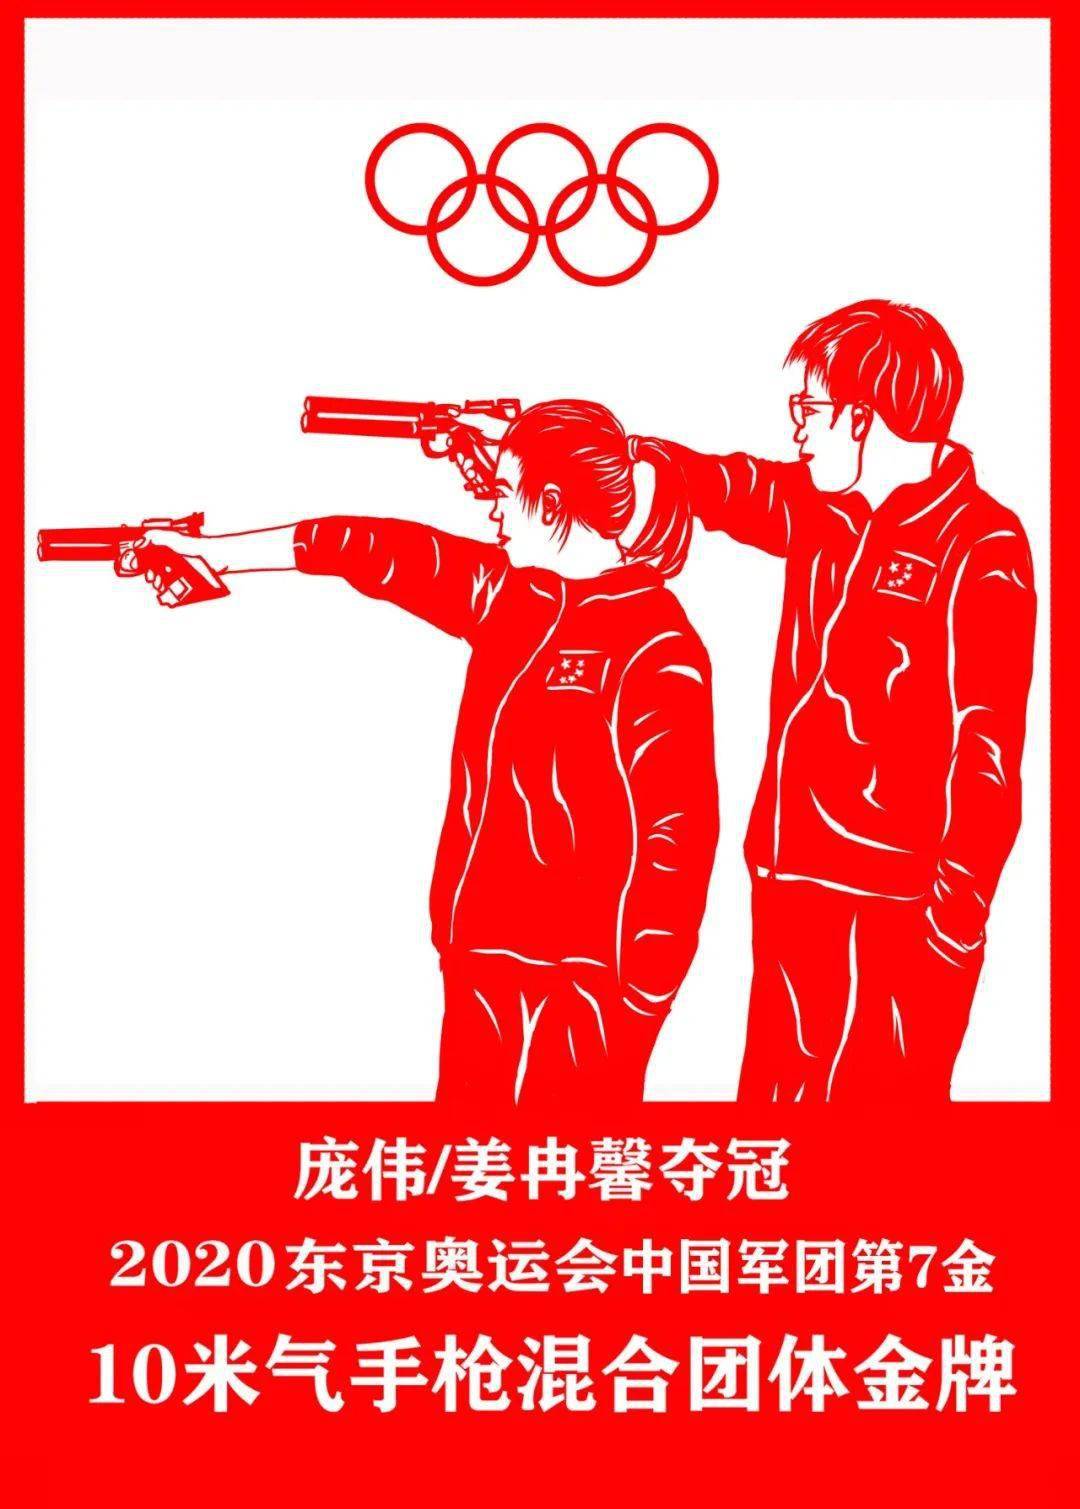 韩晓明介绍,东京奥运会开始前,就萌发了用剪纸作品致敬奥运健儿的想法